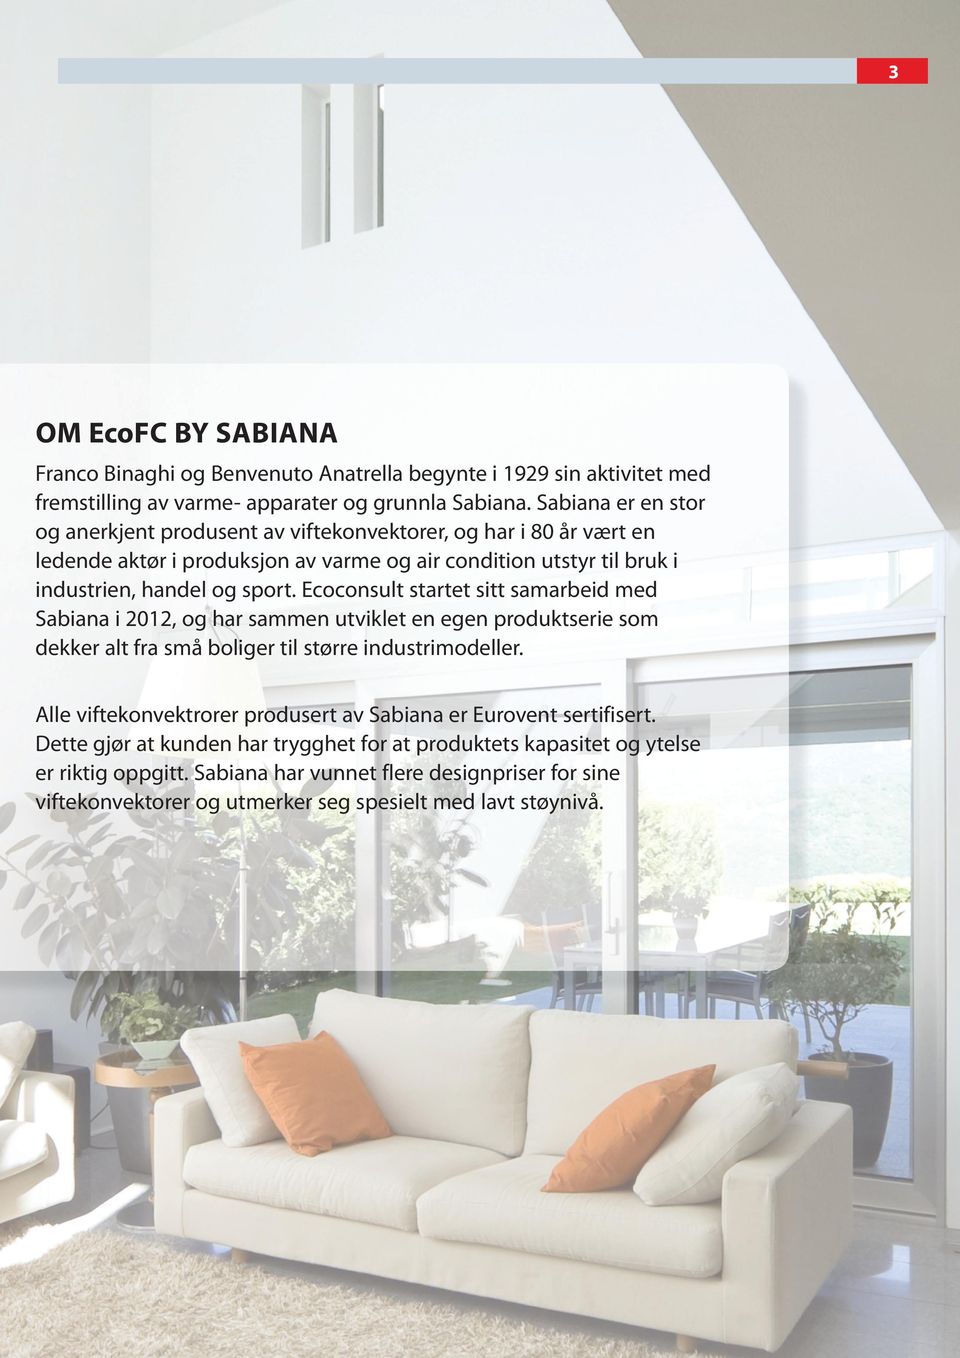 Ecoconsult startet sitt samarbeid med Sabiana i 2012, og har sammen utviklet en egen produktserie som dekker alt fra små boliger til større industrimodeller.